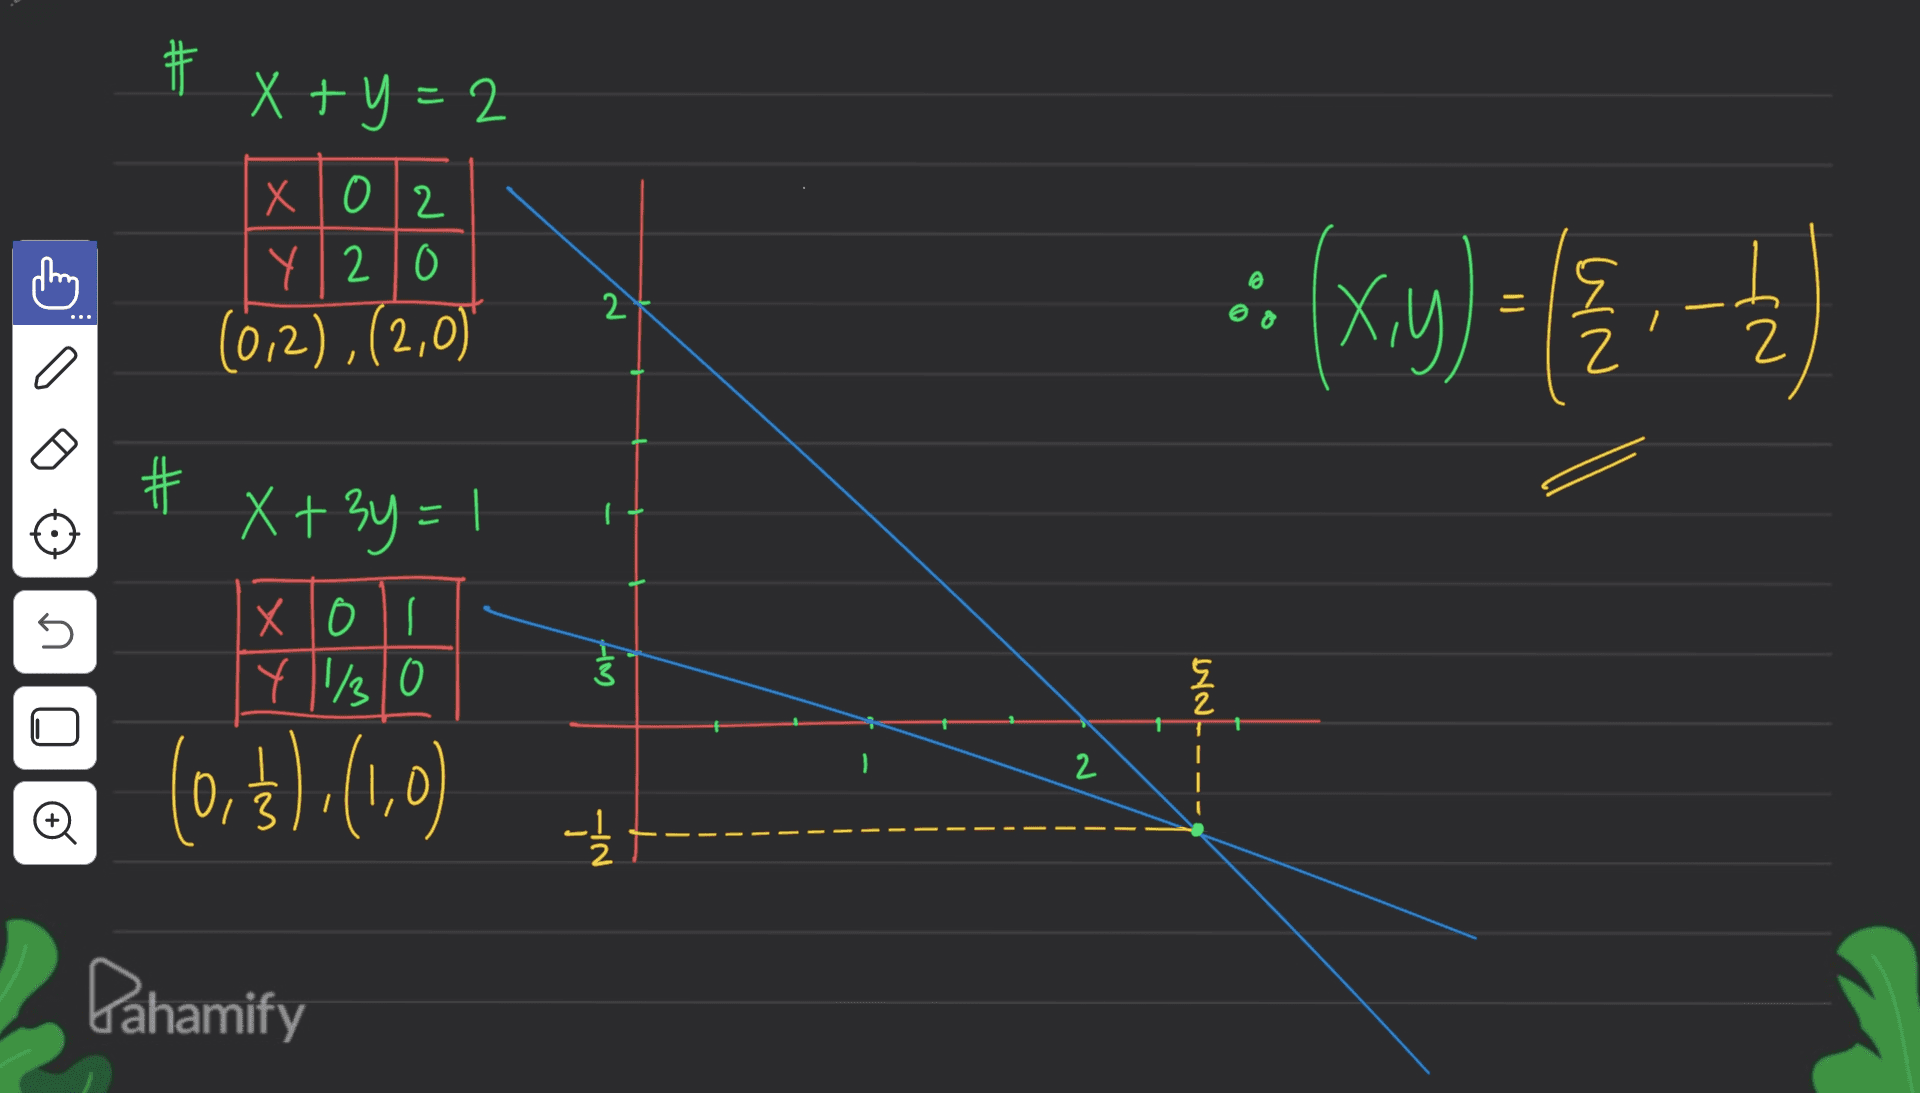 步 # 书 x+y=2 X012 Y20 (0,2),(2,0) © 2 Xy 2 2 a # - x + 3y = ! XOS Y 11/30 5 W 5 2 (0,$),(1,0) 2 Đ -1/2 Dahamify 